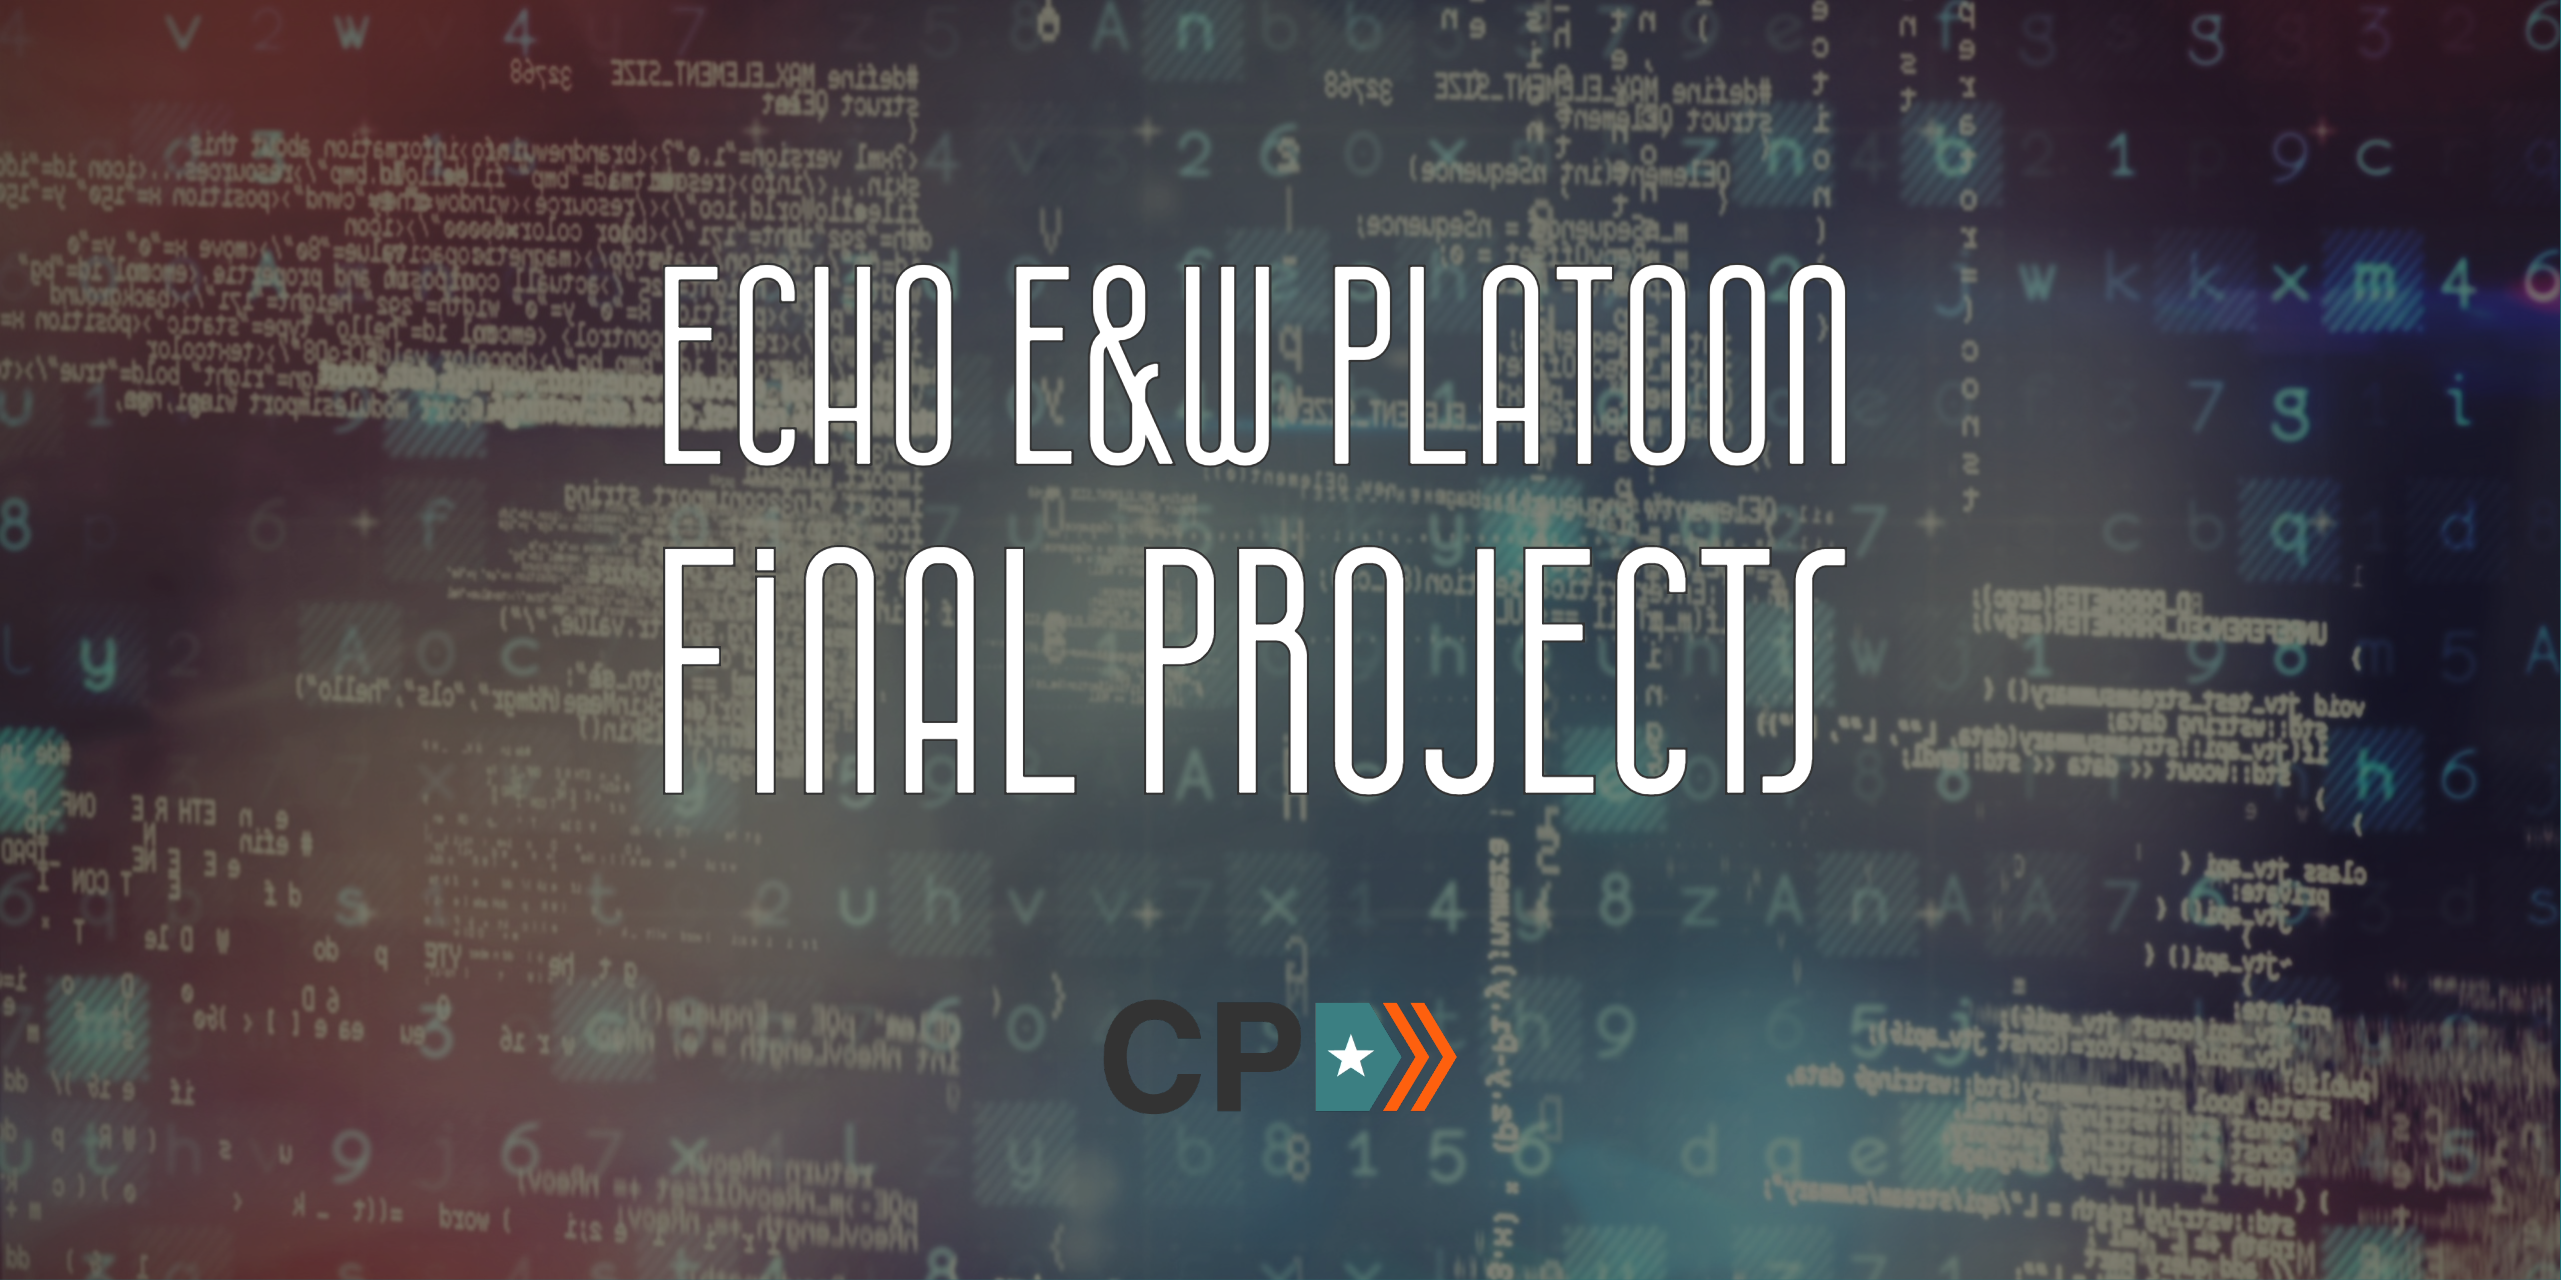 Echo_E&W_Final_Project